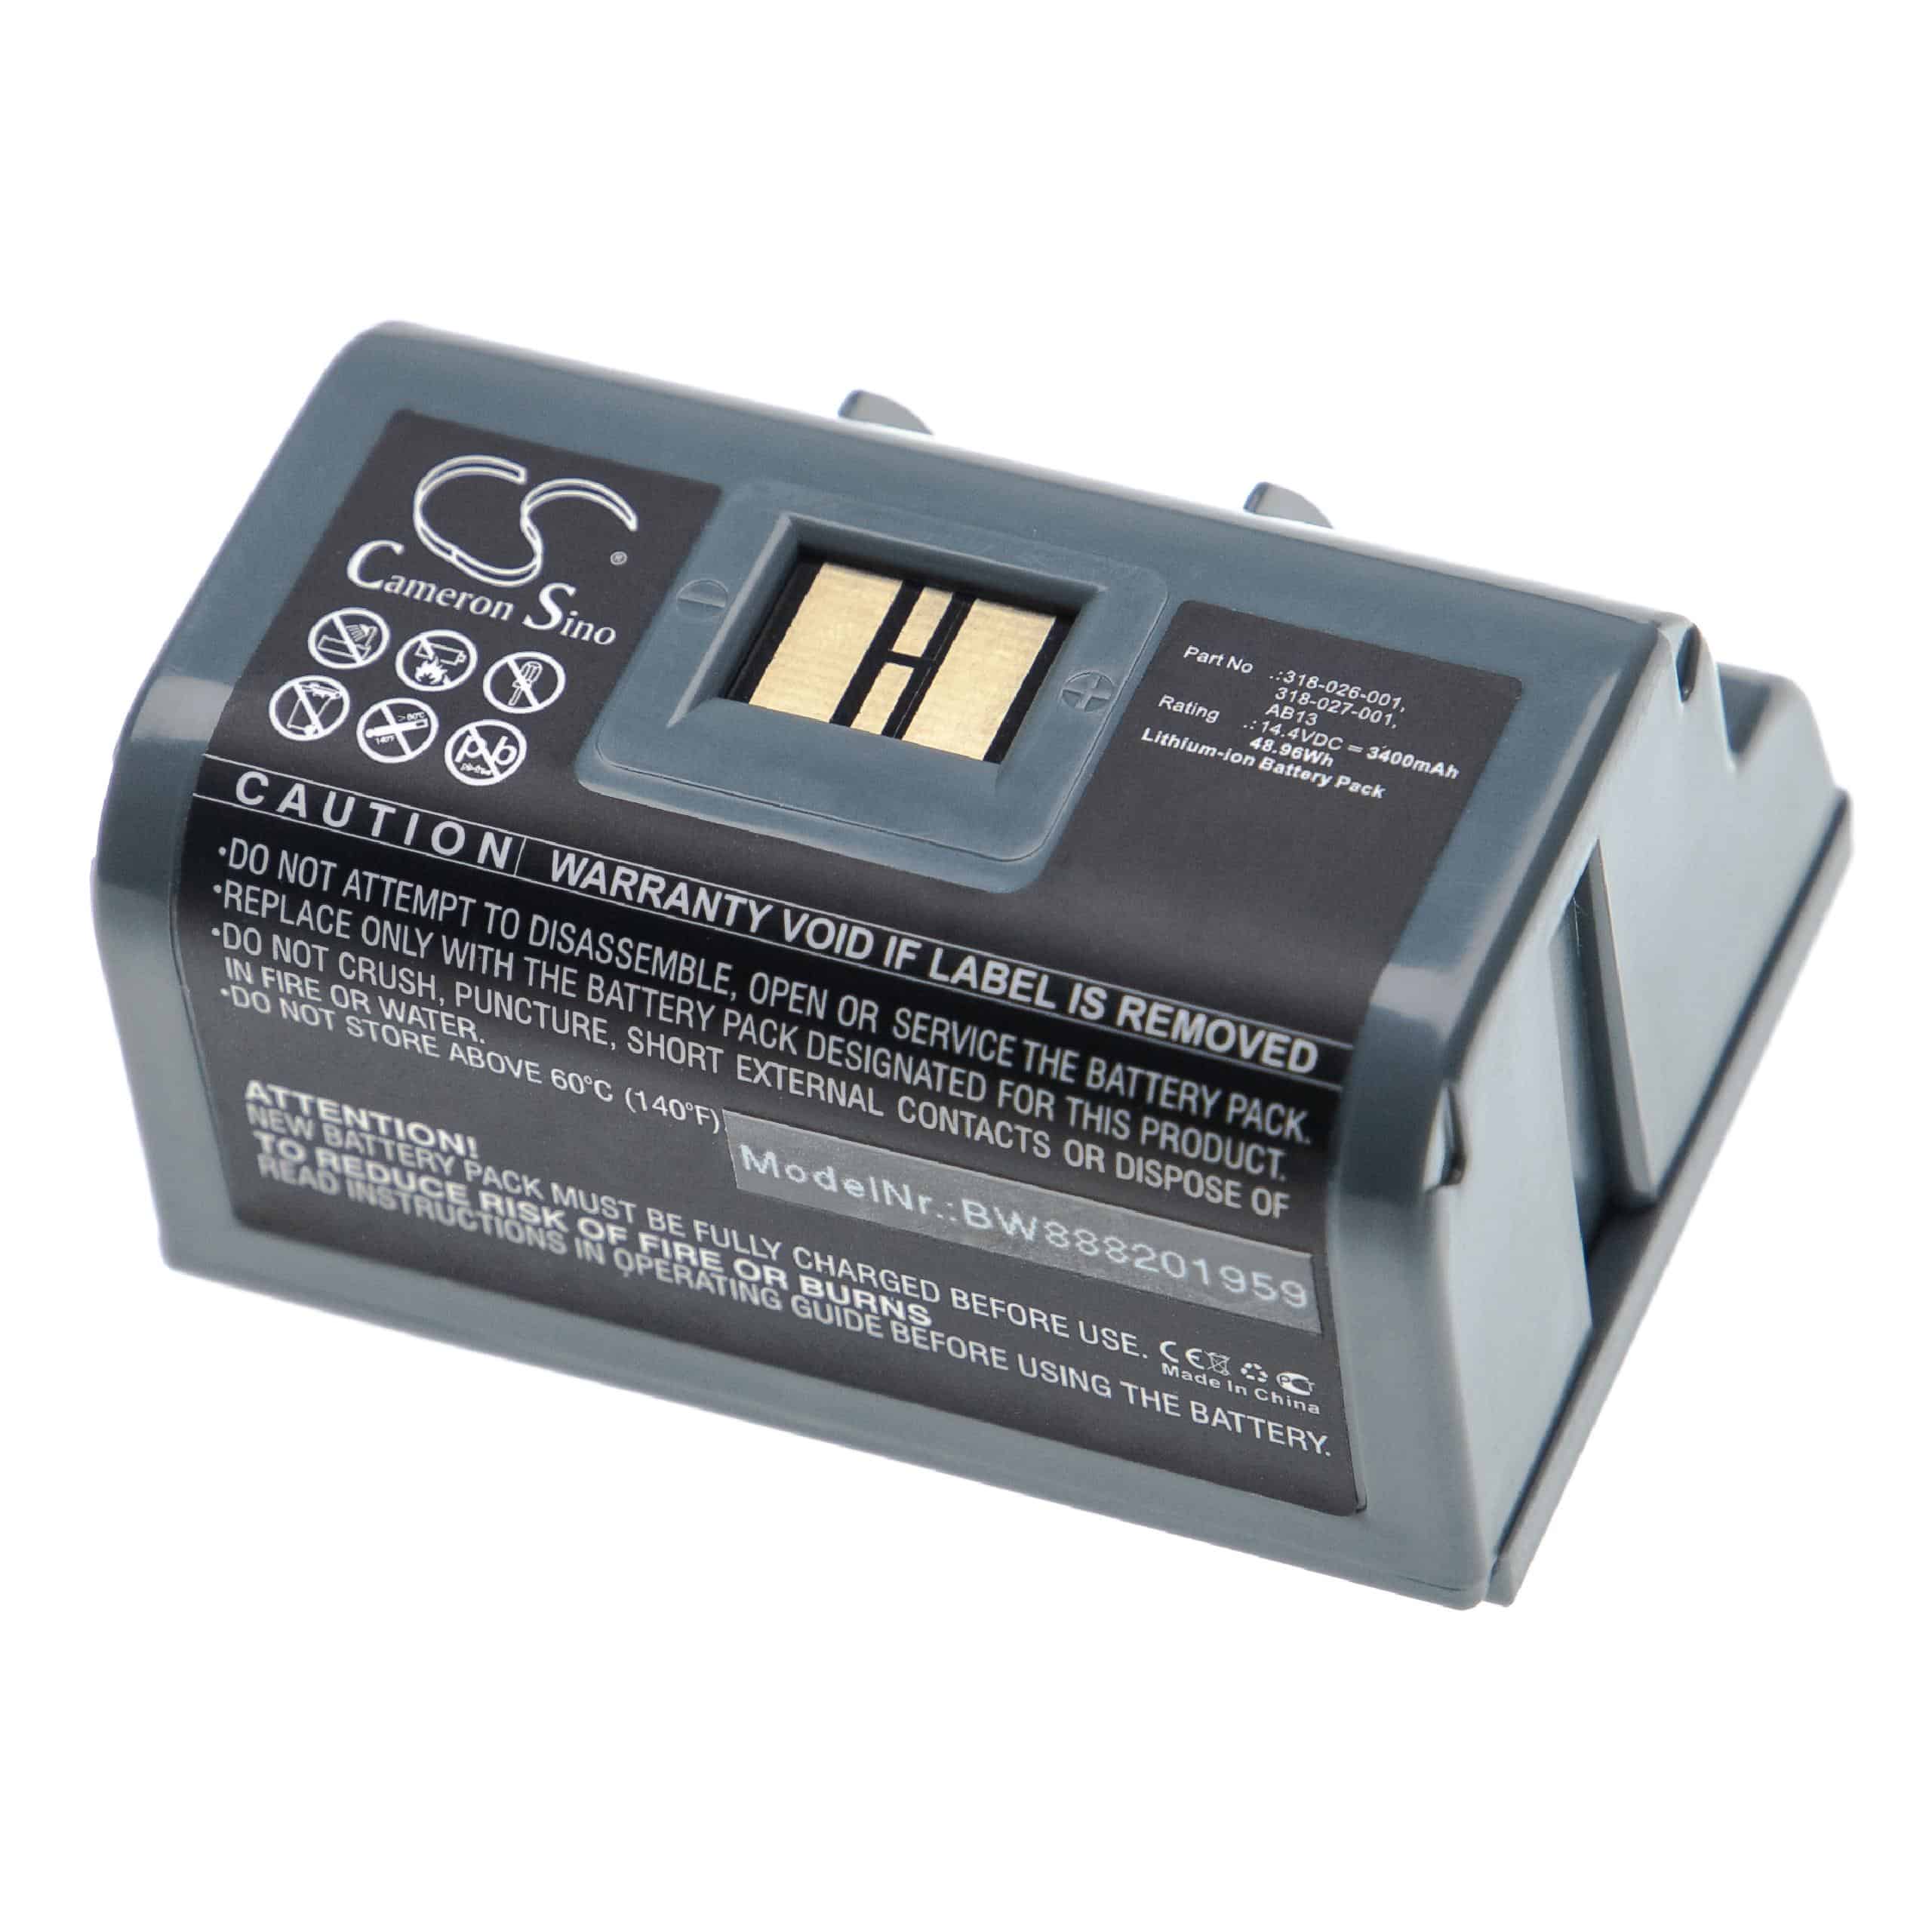 Batterie remplace Intermec 318-026-001, 318-026-003, 318-026-004 pour imprimante - 3400mAh 14,4V Li-ion